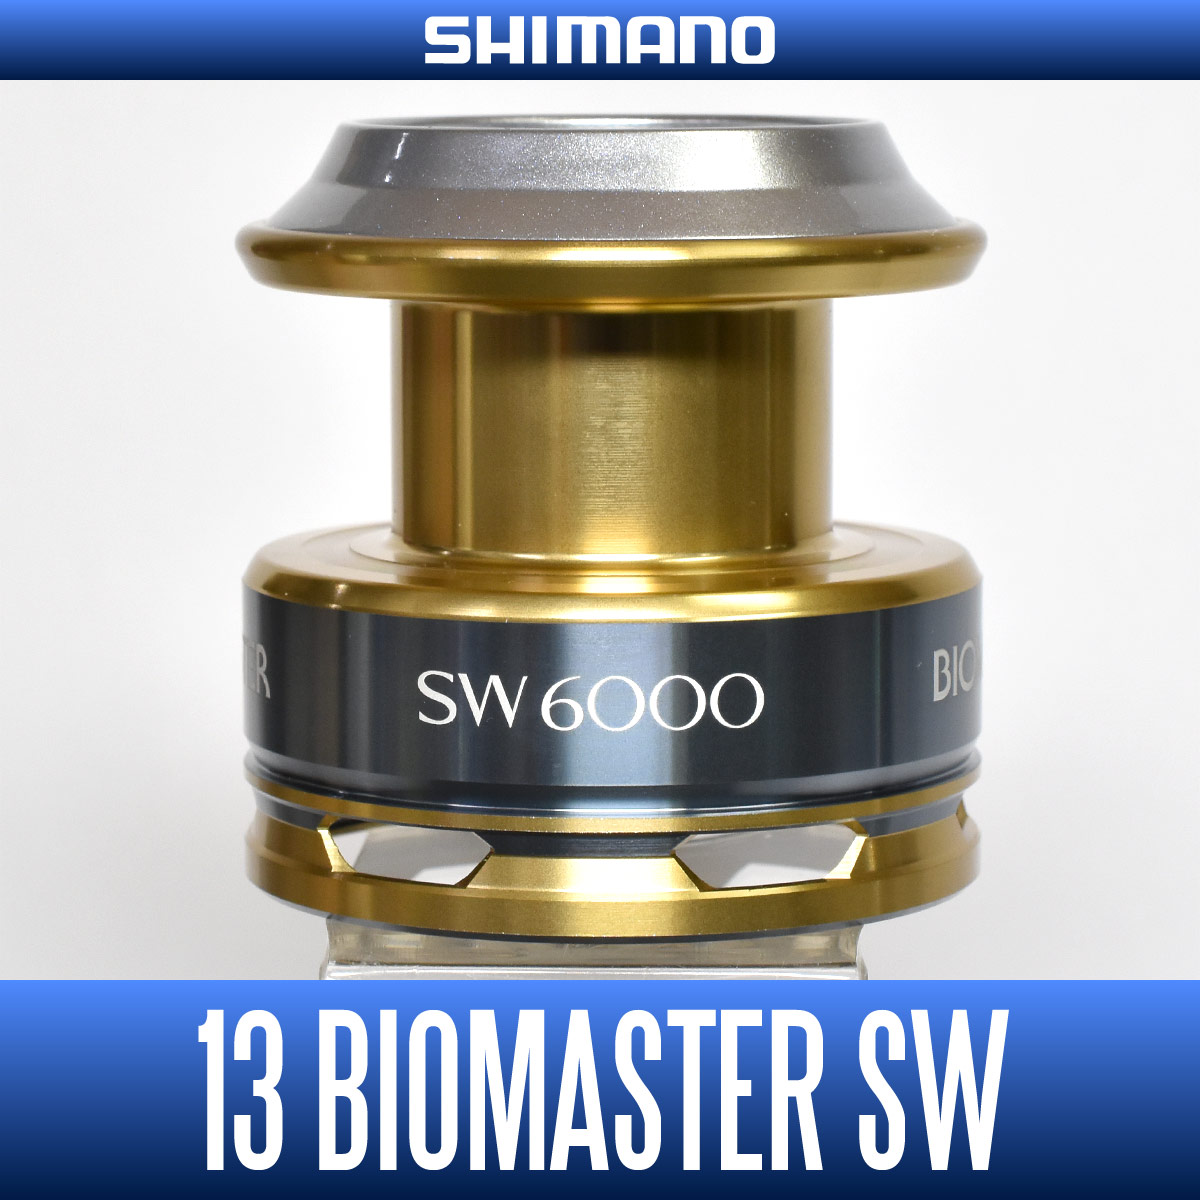 SHIMANO シマノ バイオマスター SW 6000XG - リール